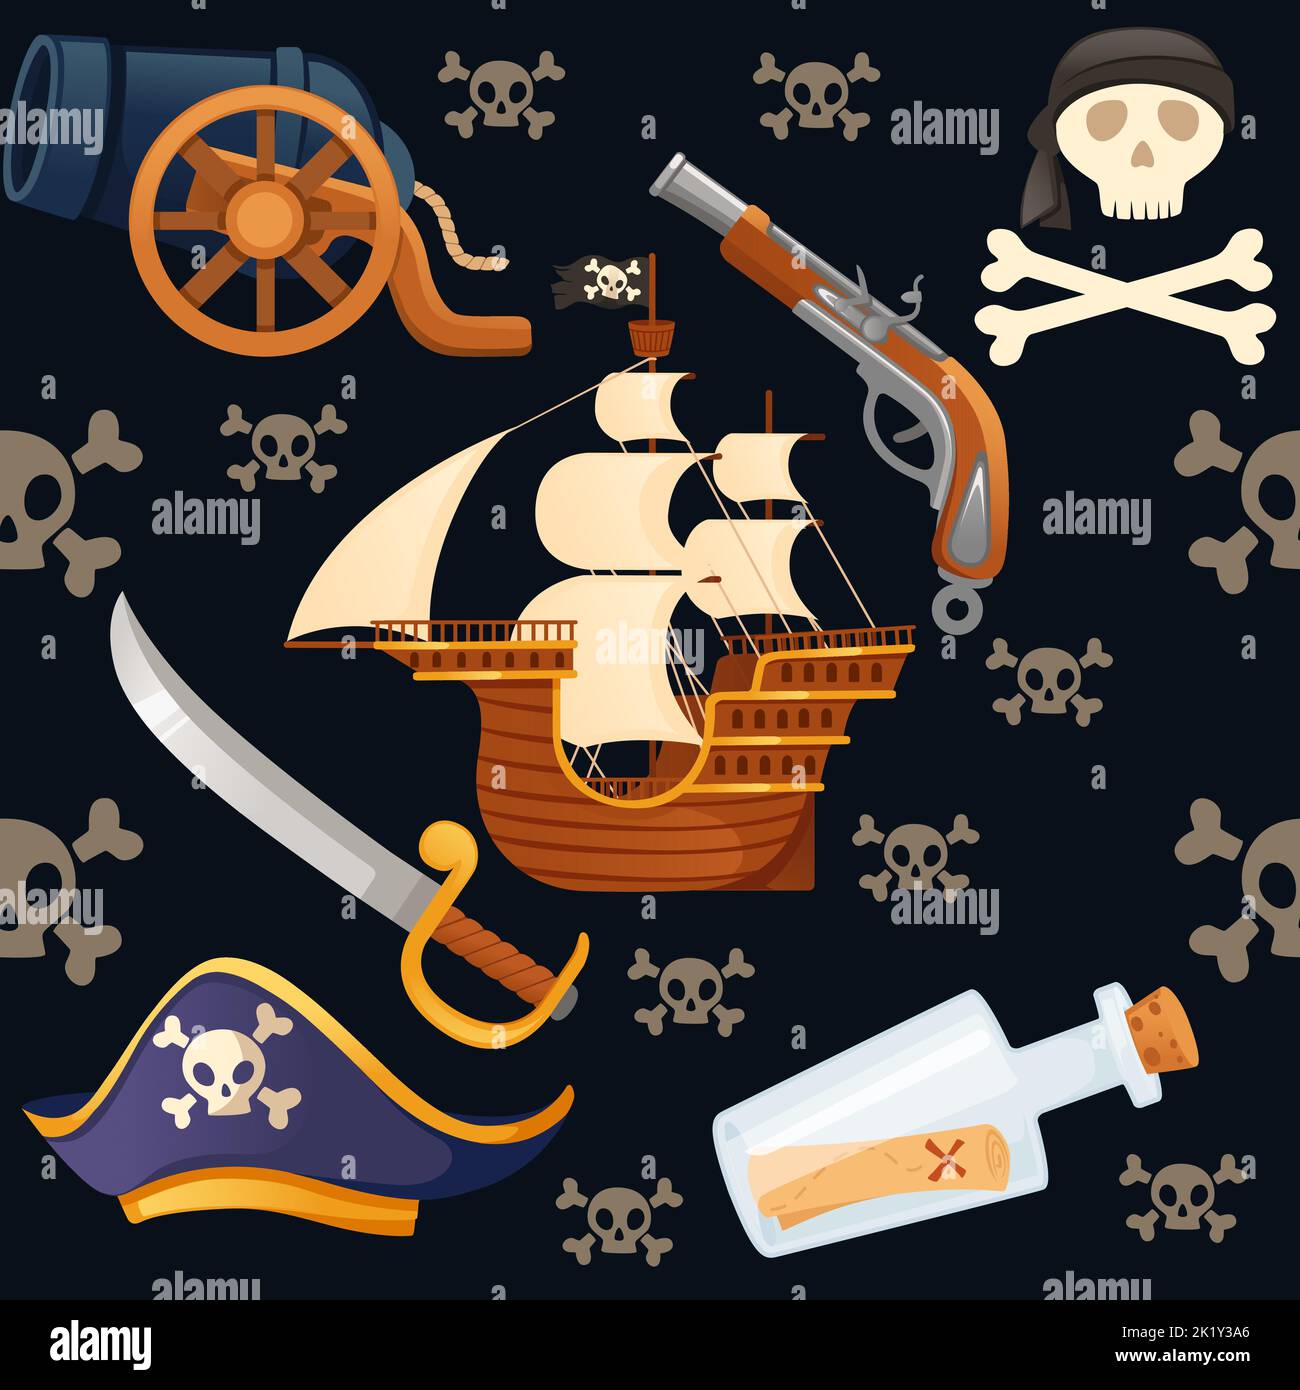 Motif fluide de thème pirate avec crâne de navire et illustration de vecteur arme sur fond sombre Illustration de Vecteur